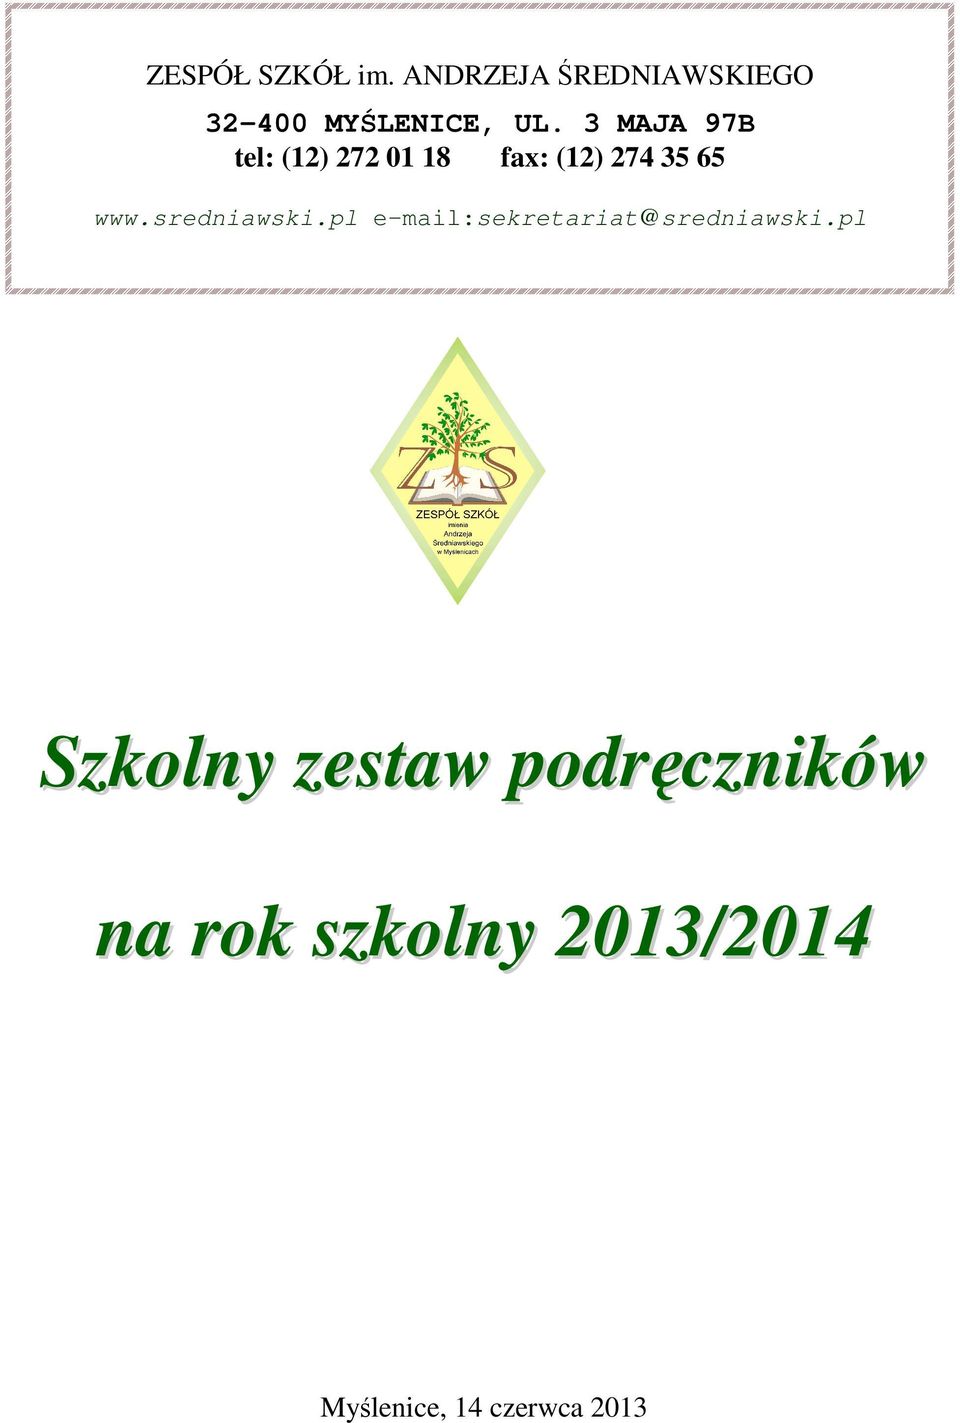 sredniawski.pl e mail:sekretariat@sredniawski.